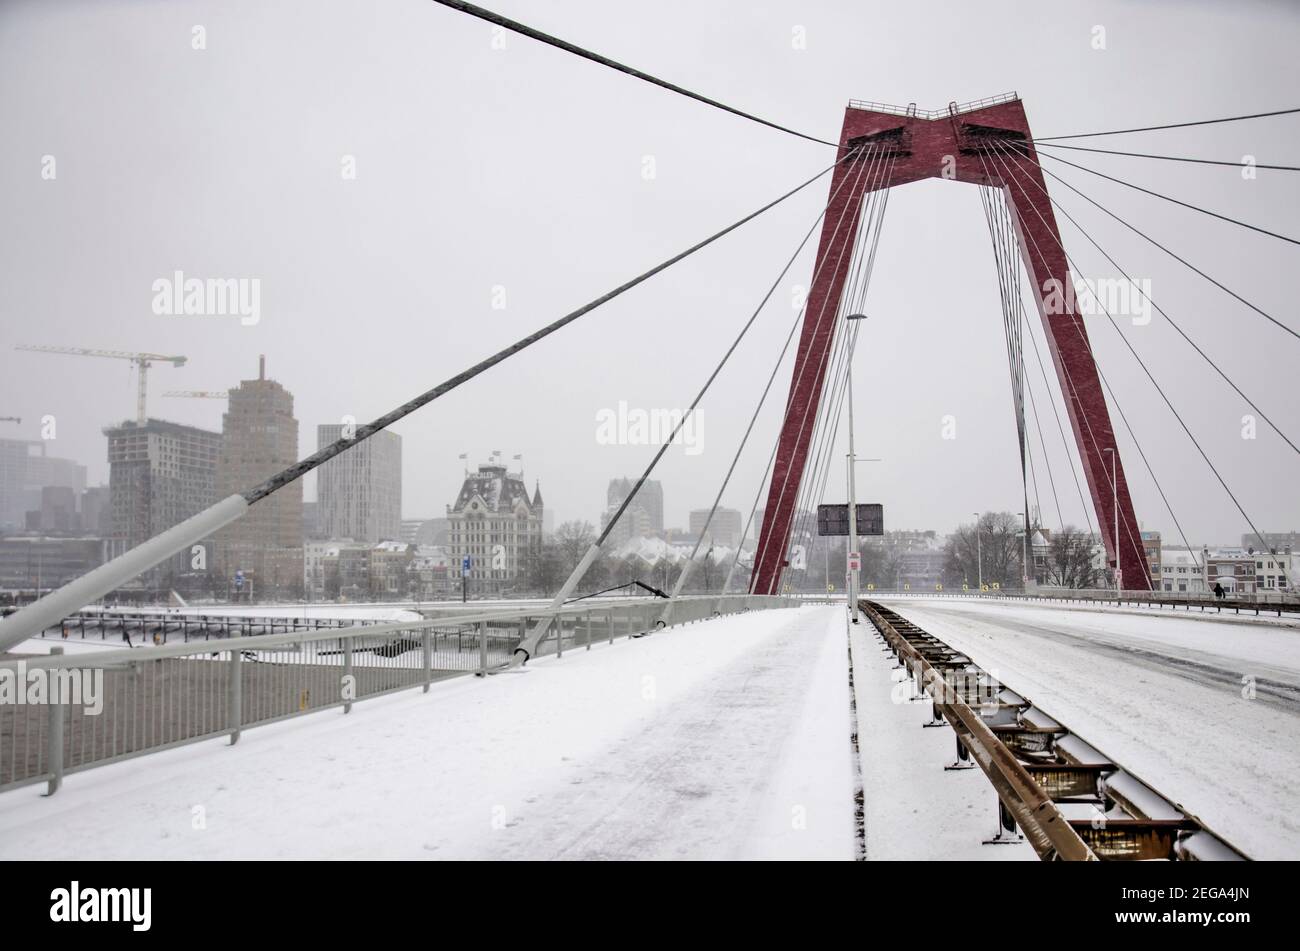 Rotterdam, le 7 février 2021 : Pont Willems avec son pont couvert d'une couche de neige pendant un blizzard par une journée froide d'hiver Banque D'Images